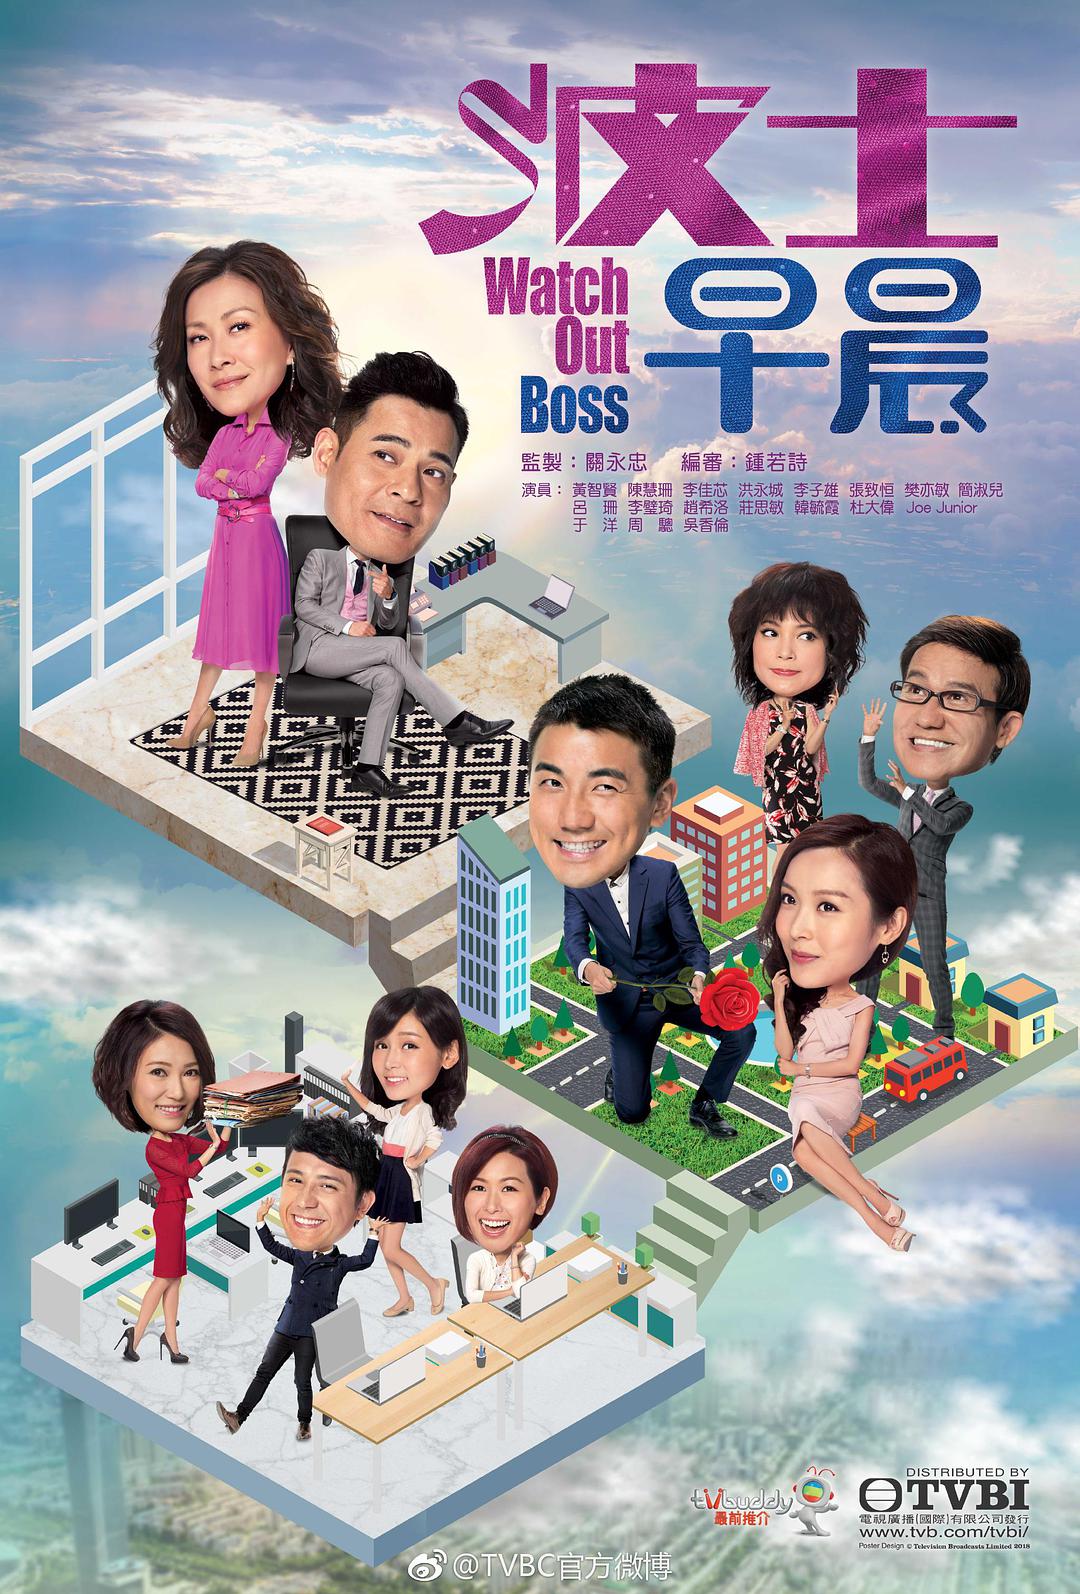 HK TV Drama, watch hk drama, Watch Out Boss